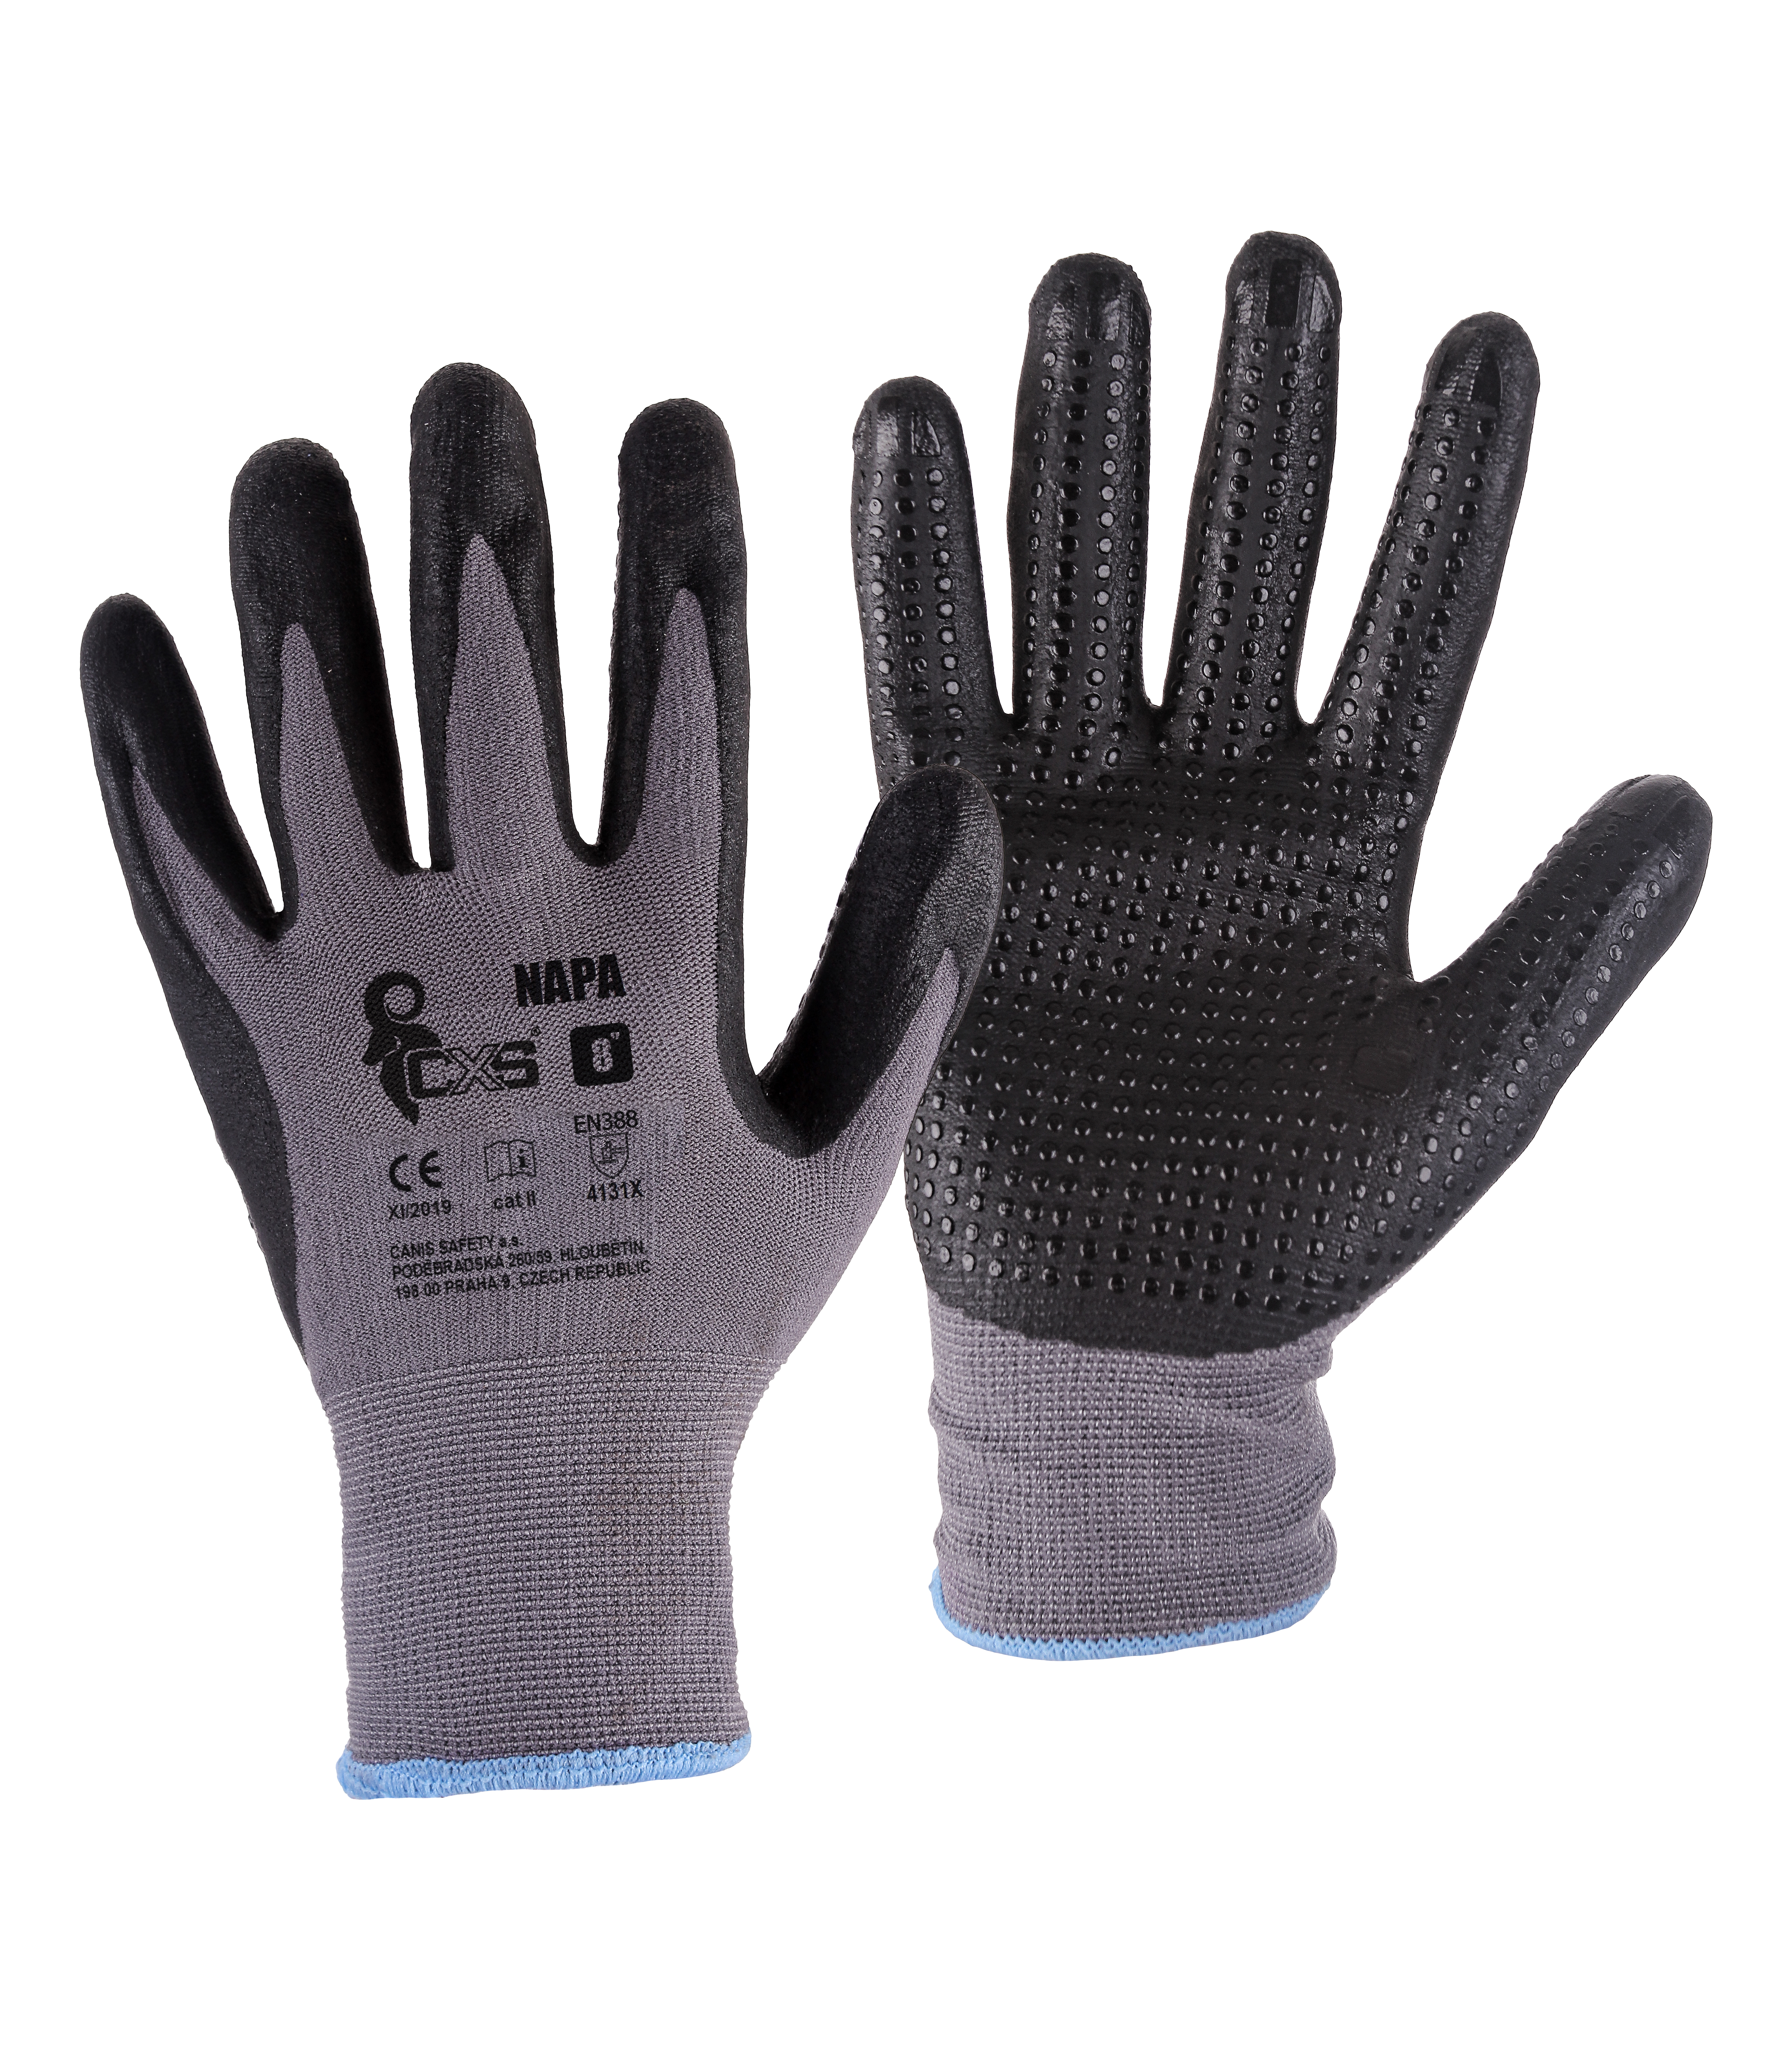 rukavice NAPA, s úpletem, šedo - černé, velikost 8 0.04 Kg TOP Sklad4 606035 56